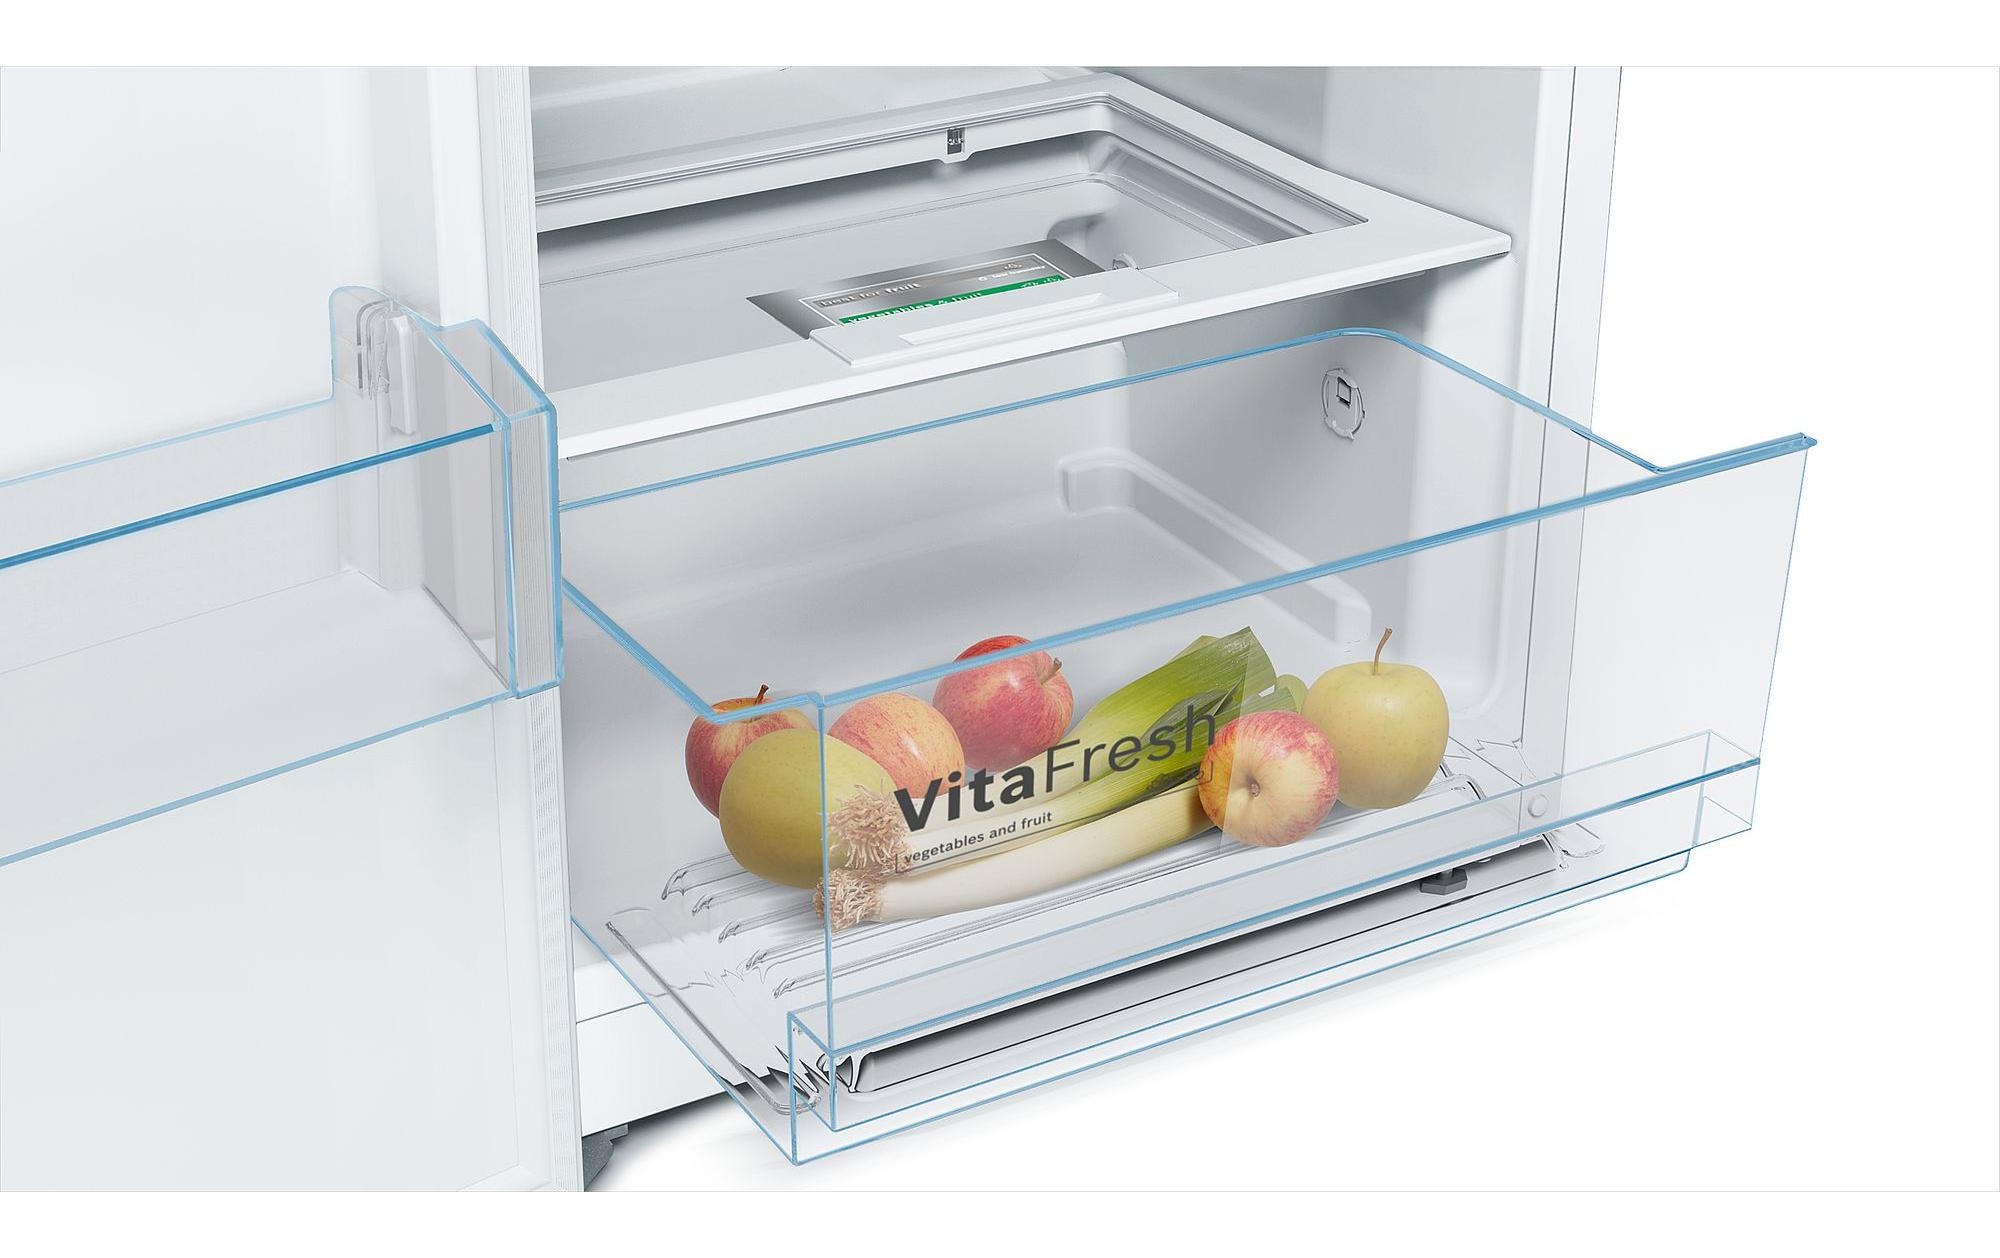 BOSCH Kühlschrank, KSV29 cm breit günstig kaufen cm VWEP, 60 hoch, 161